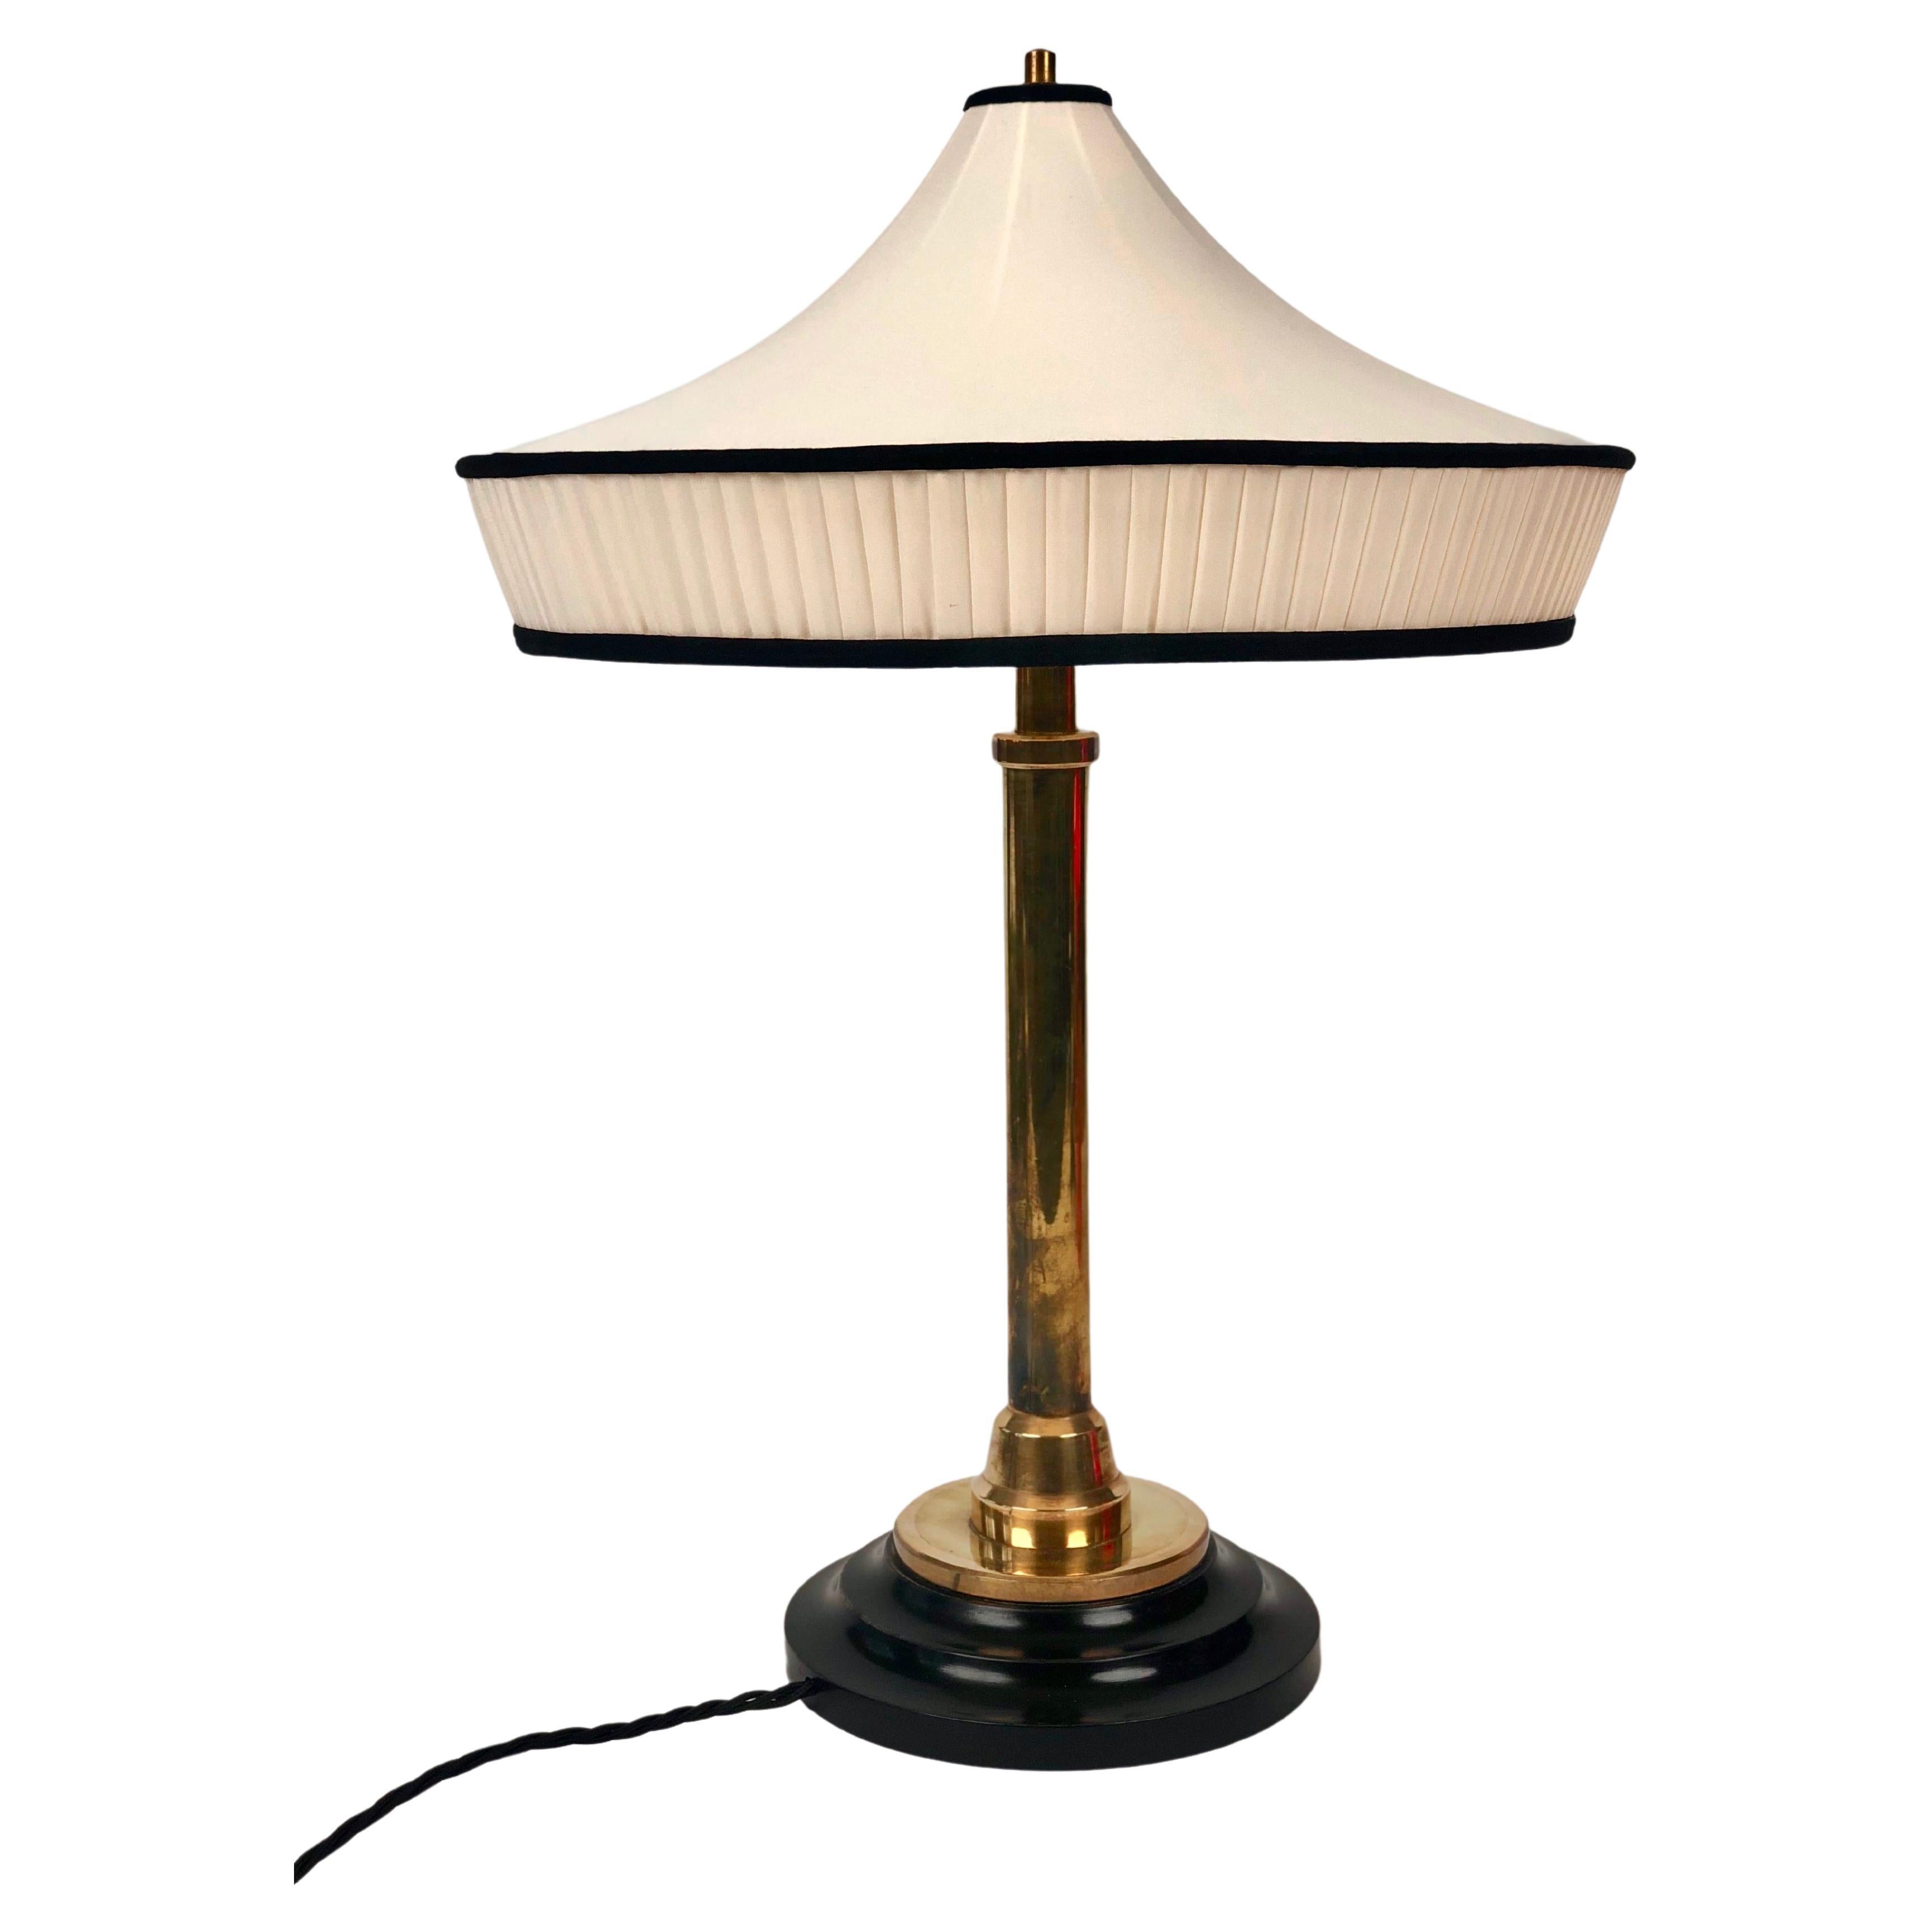 Austrian Table Lamp, Jugendstil, Hoffmannesque